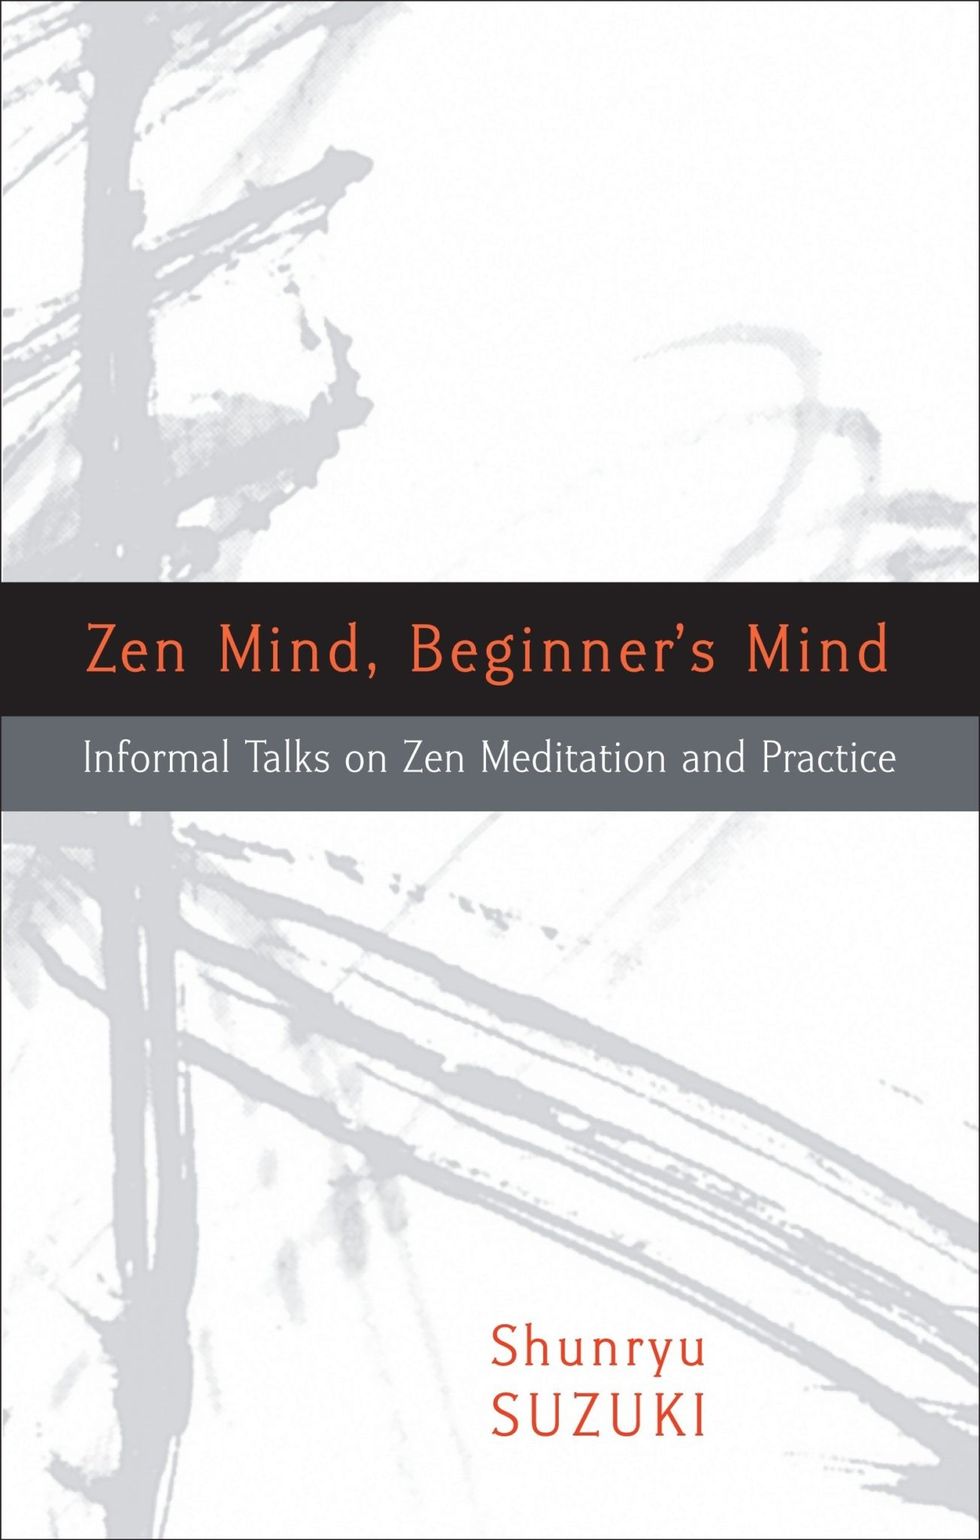 Zen-Mind-Beginners-Mind-meditation-book-Shunryu-Suzuki